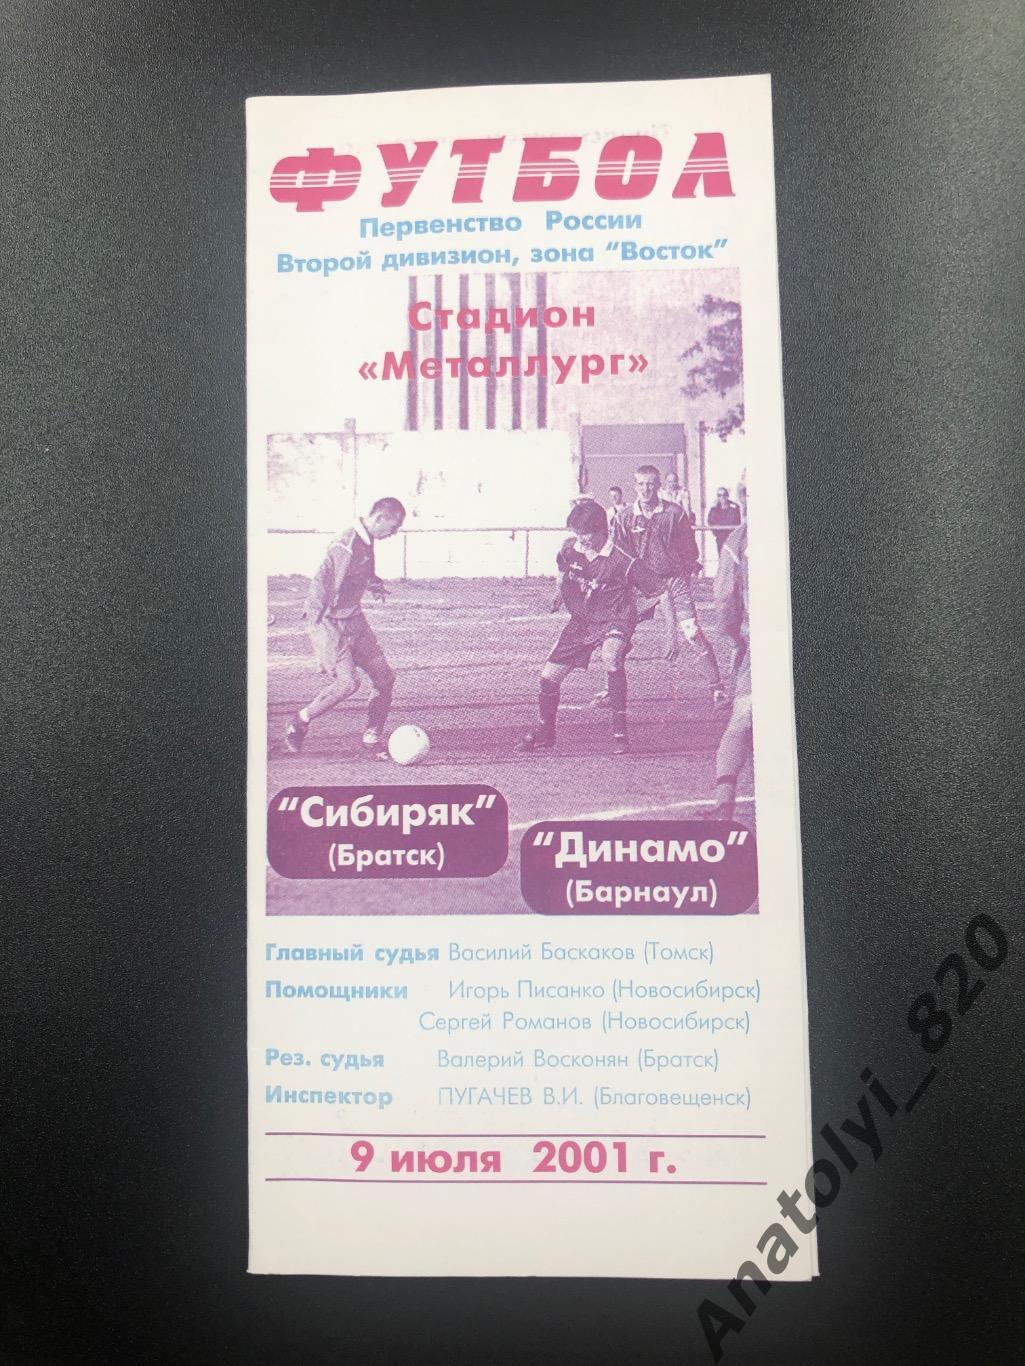 Сибиряк Братск - Динамо Барнаул, 09.07.2001